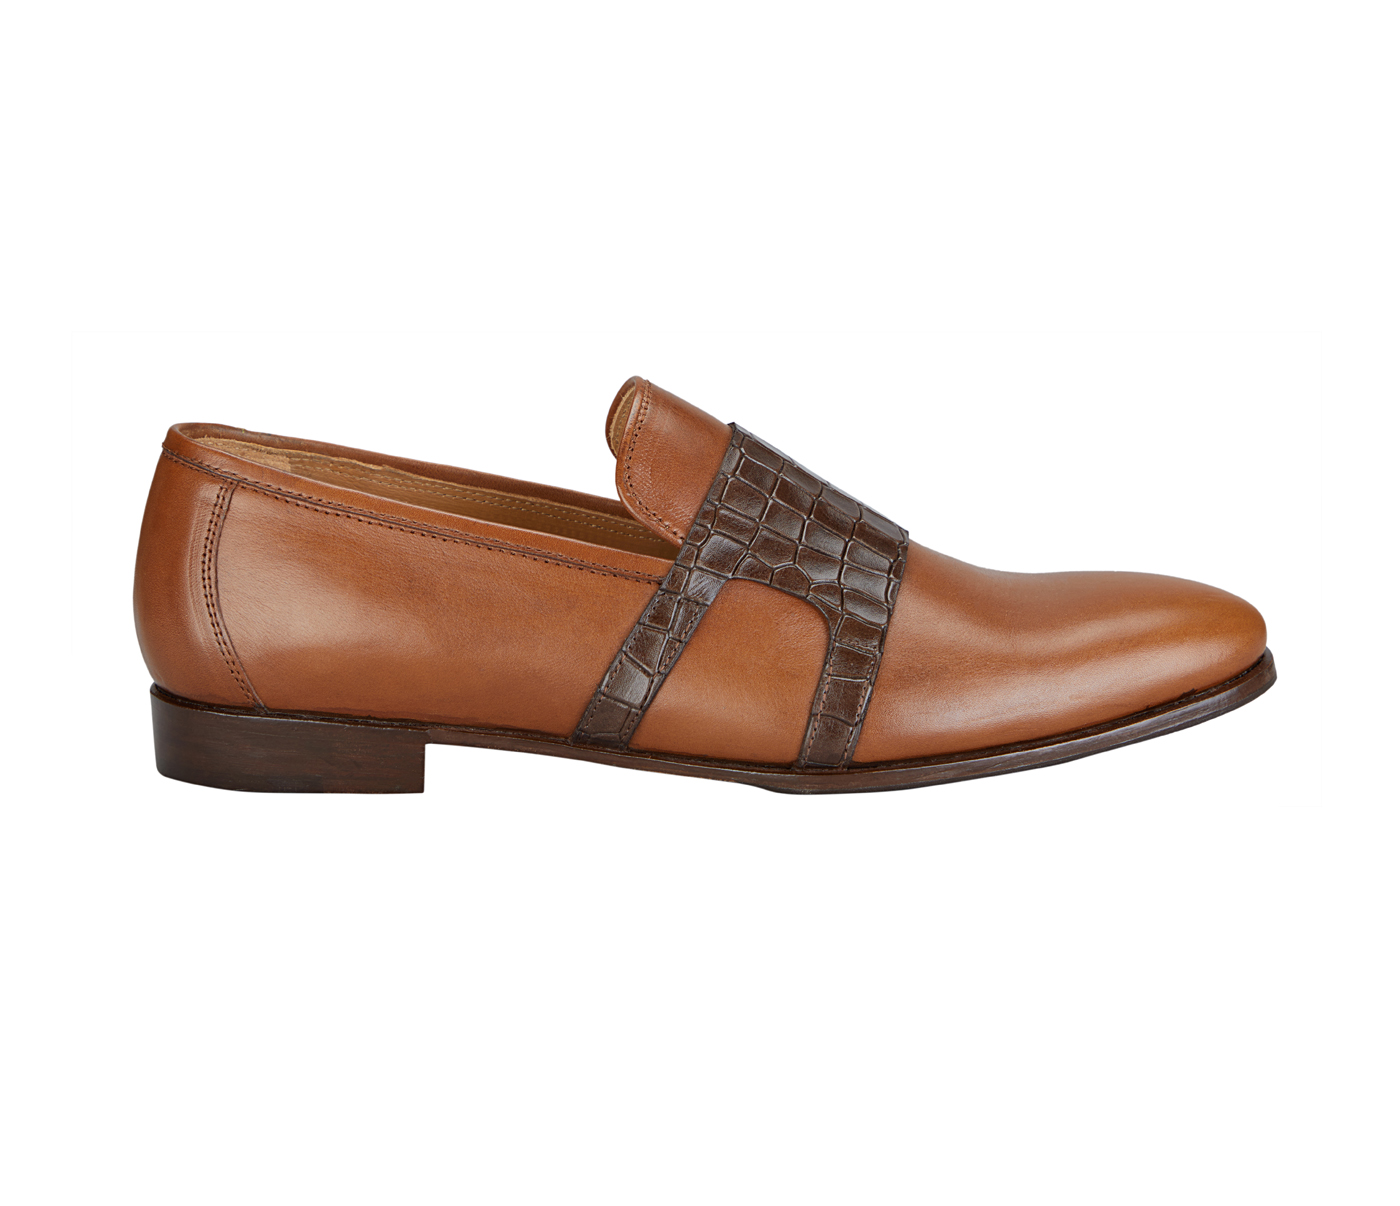 PF40-Adamis Pure Leather Footwear For Men- - Tan/Brown